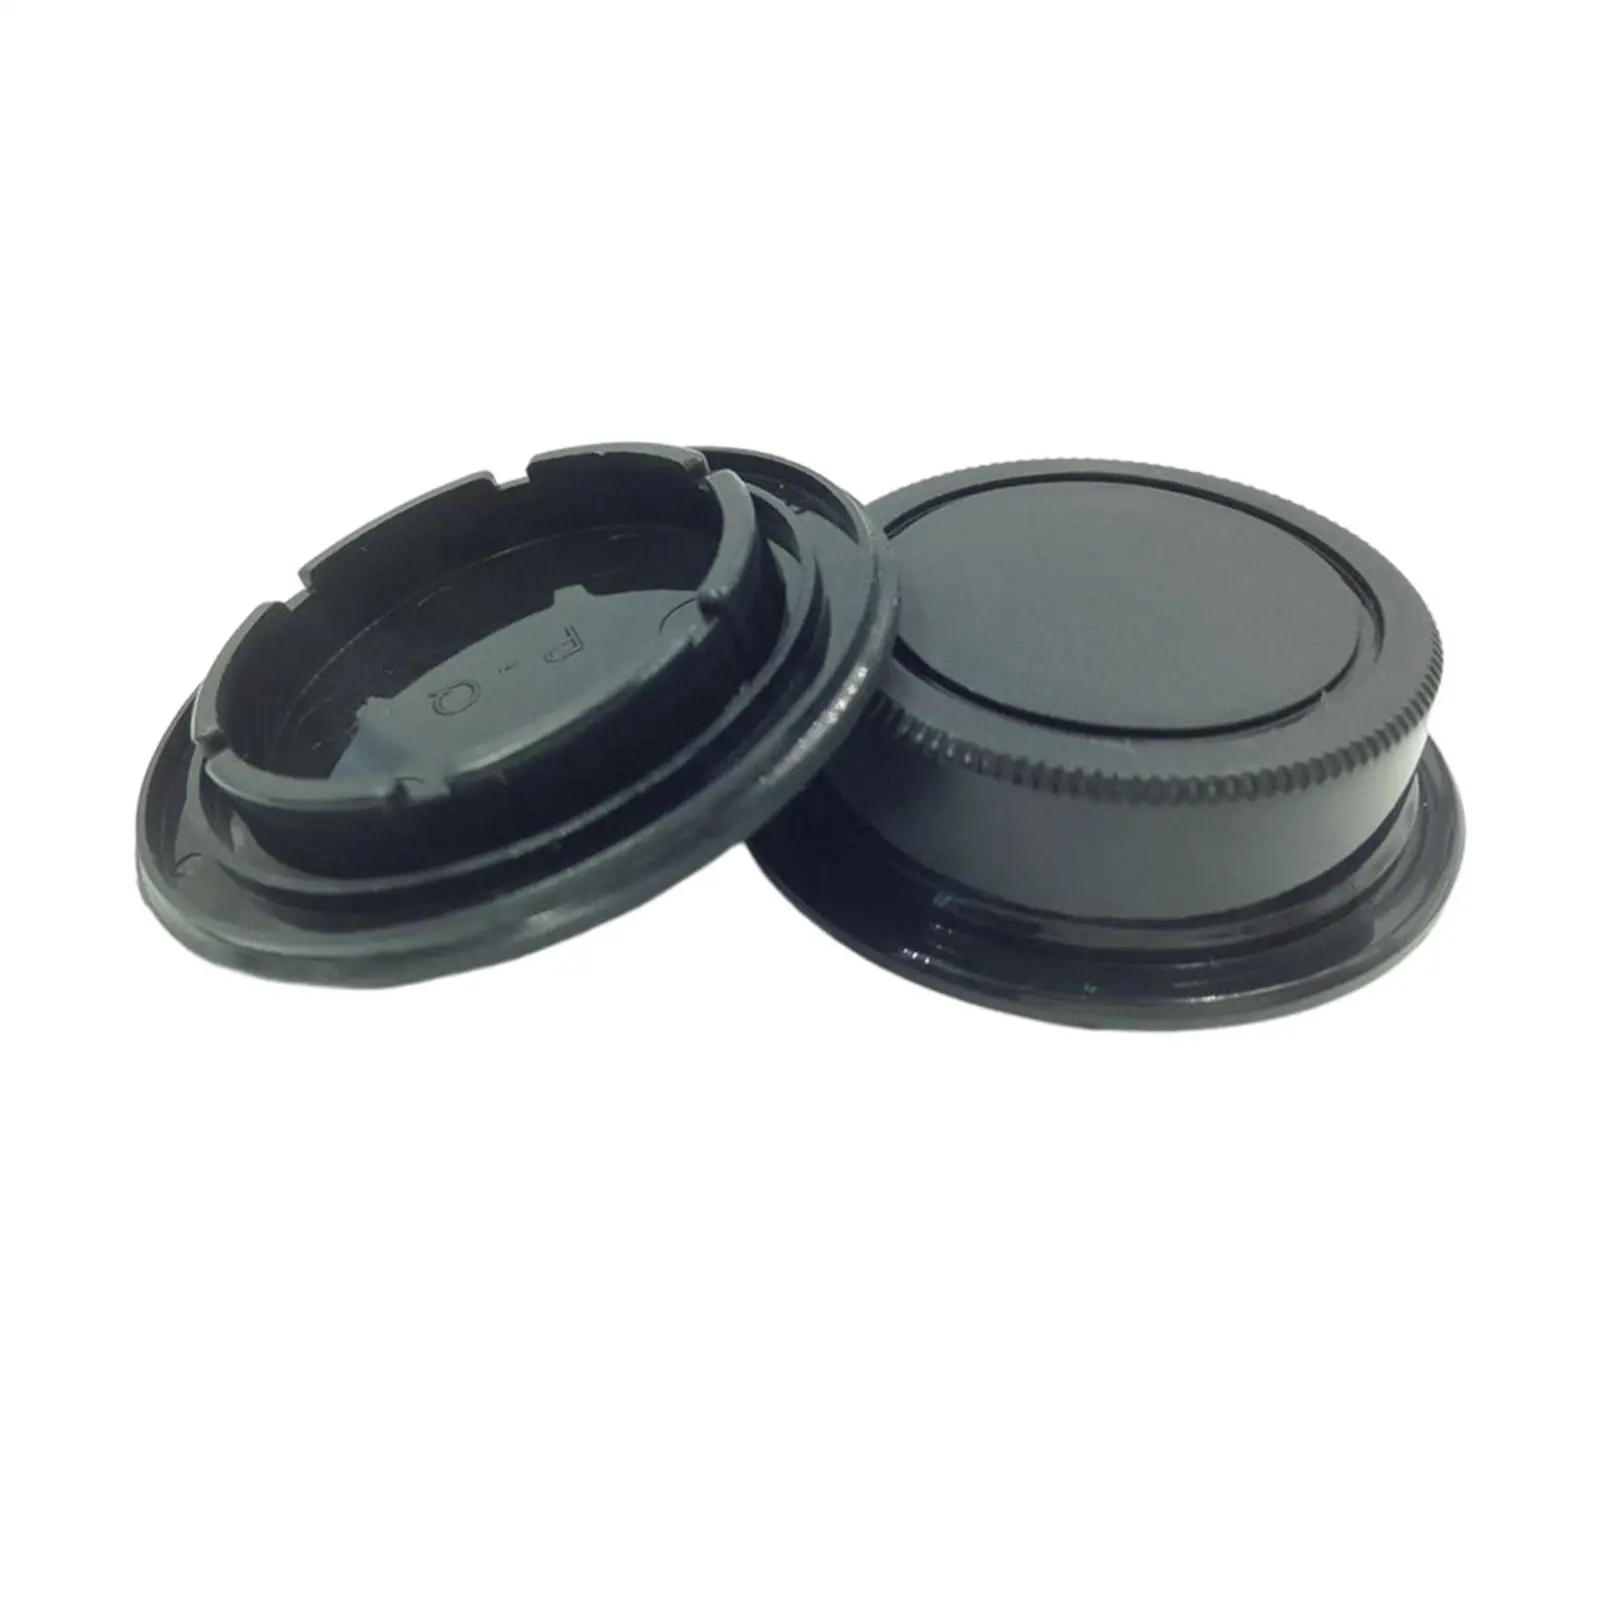 Plastic Camera Body and Rear Lens Caps Body Protector Set for Pentax Q Q7 Q10 Q S1 qs1 Cameras and Q Mount Lenses Black